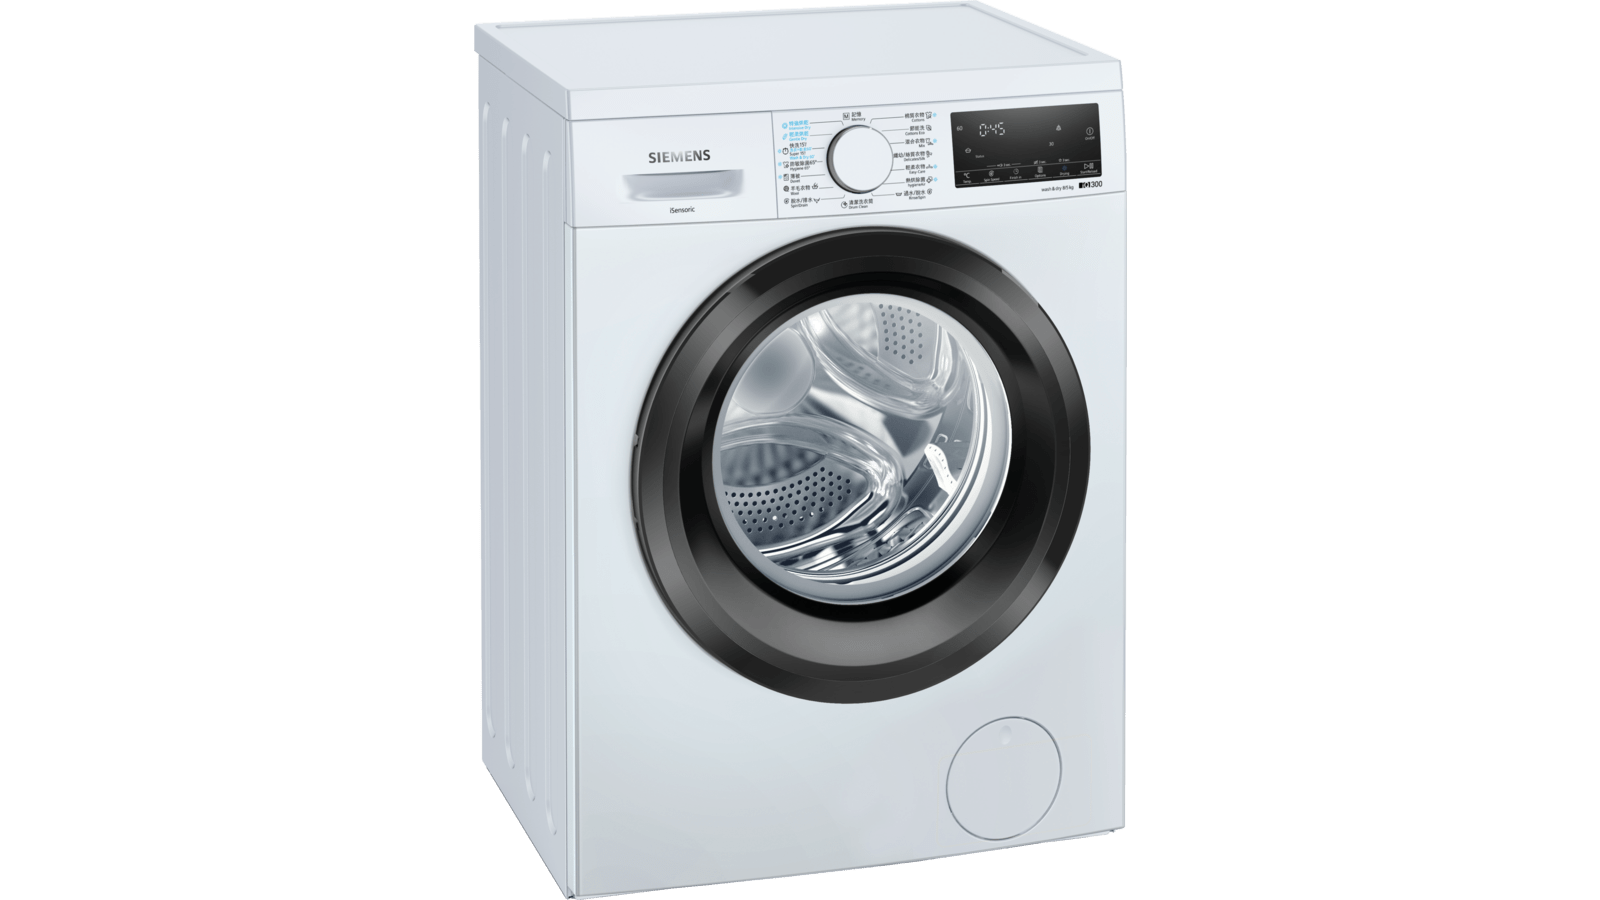 WD14S460HK 洗衣乾衣機| Siemens Home Appliances HK